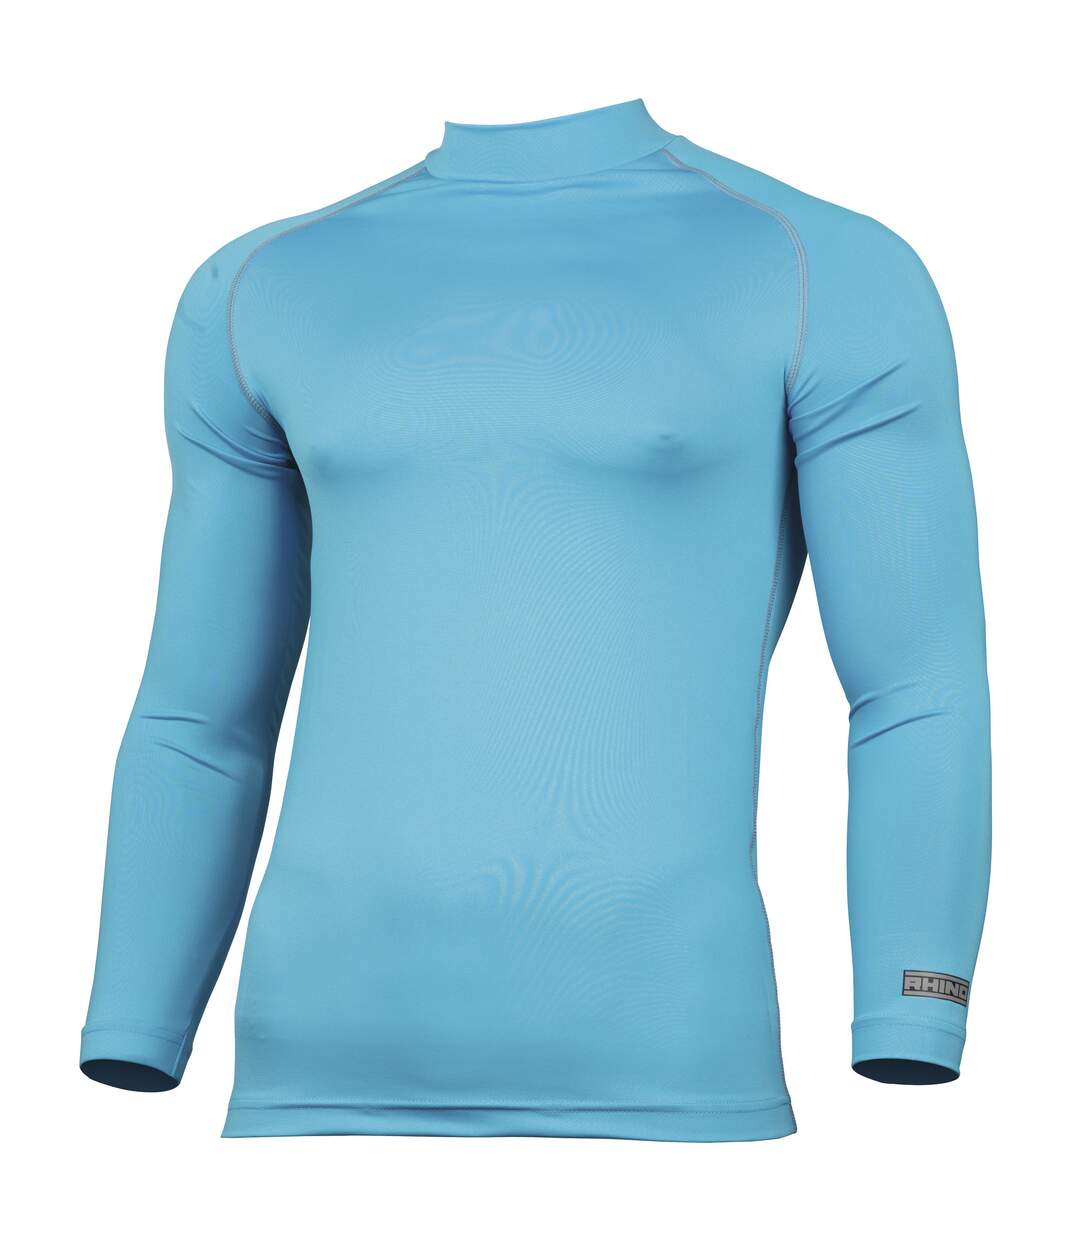 Rhino - T-shirt base layer à manches longues - Homme (Bleu clair) - UTRW1276